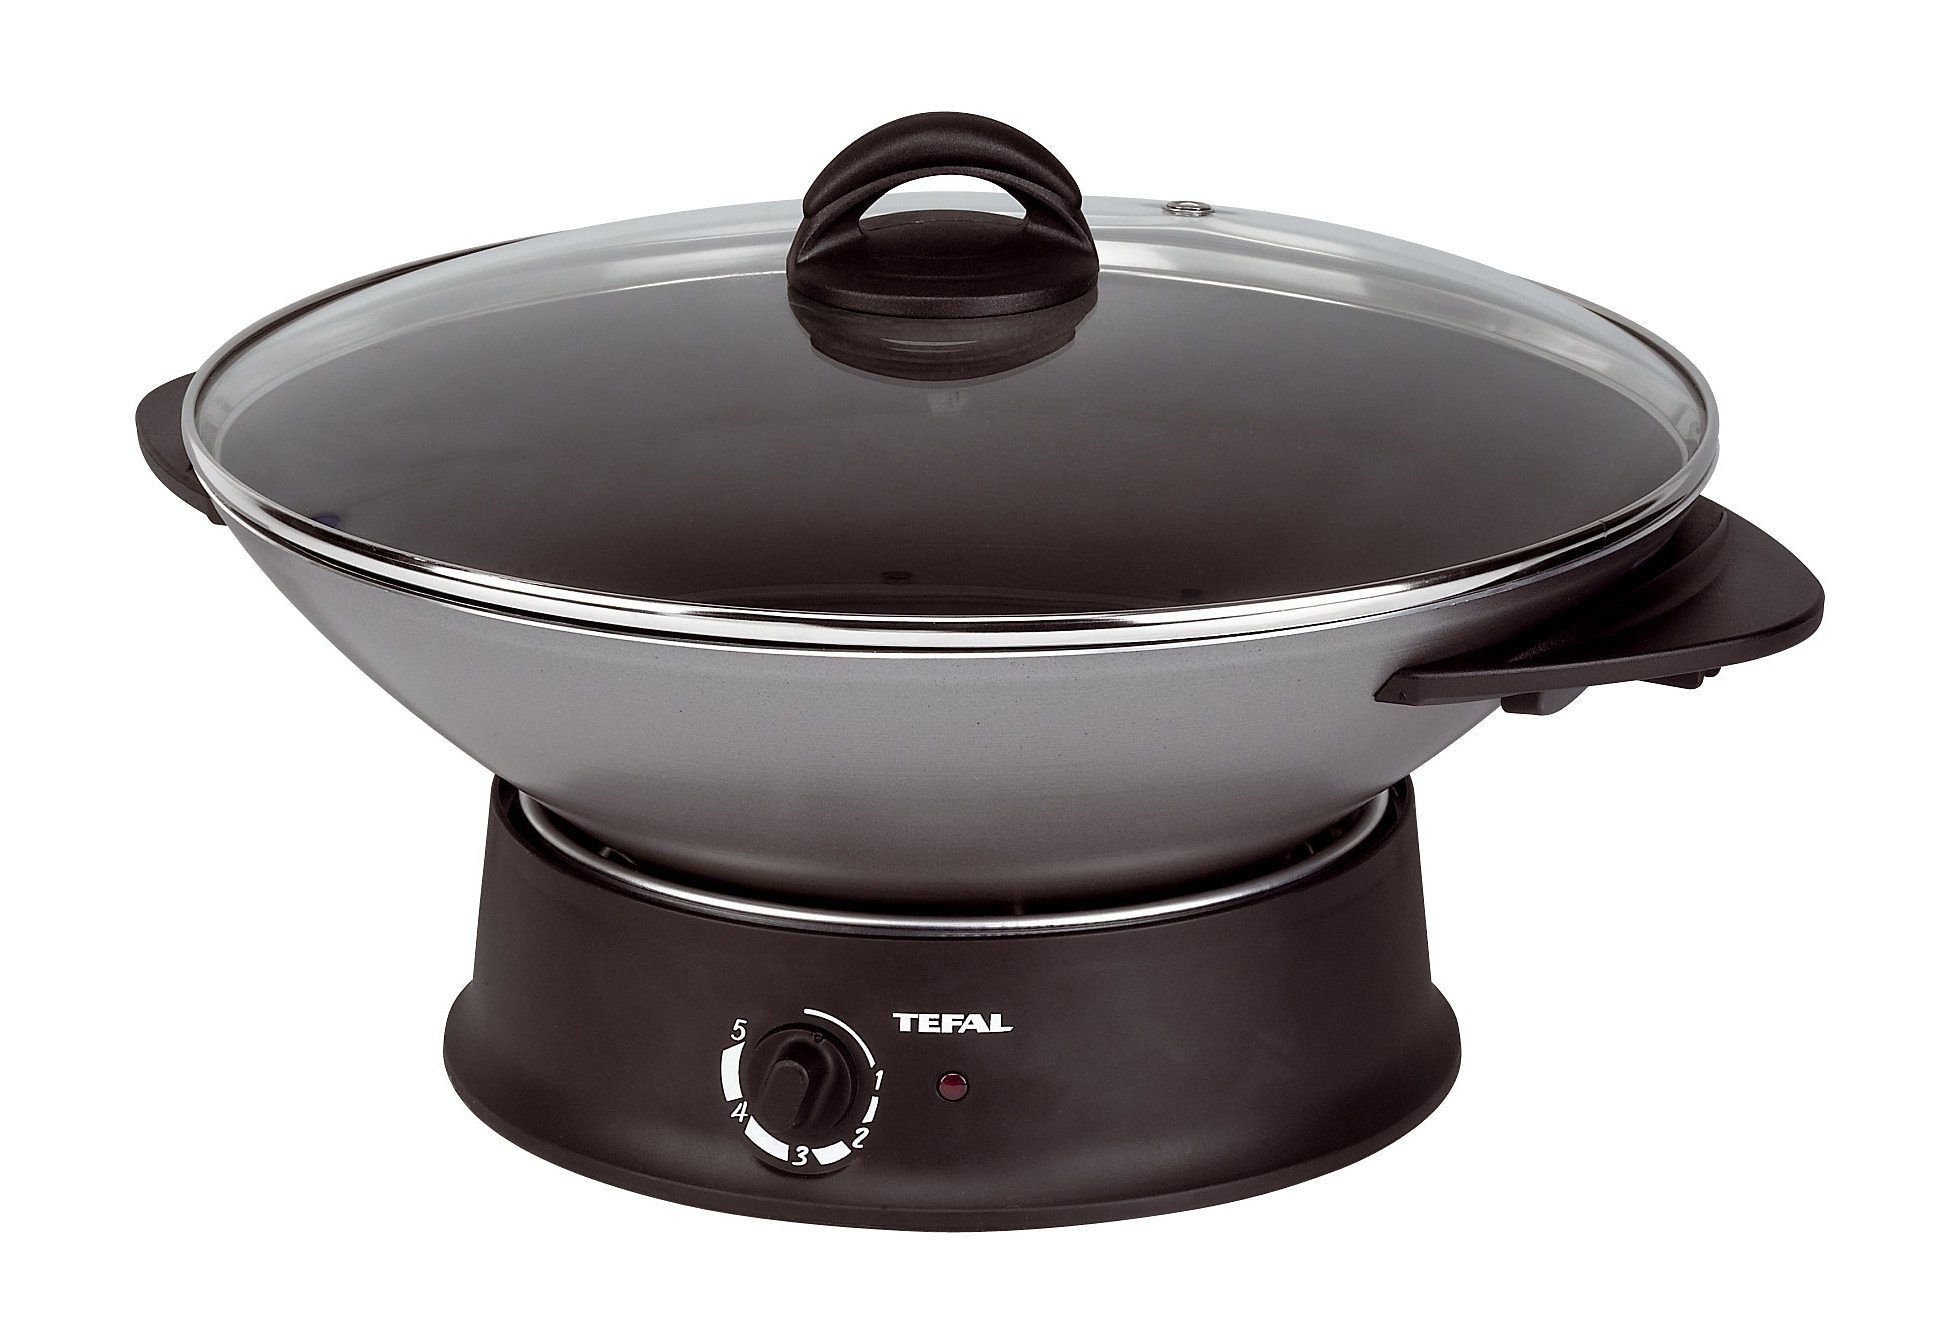 Tenslotte genoeg liefde Tefal Elektrische wokpan WO 3000 met thermospot® nu online kopen | OTTO